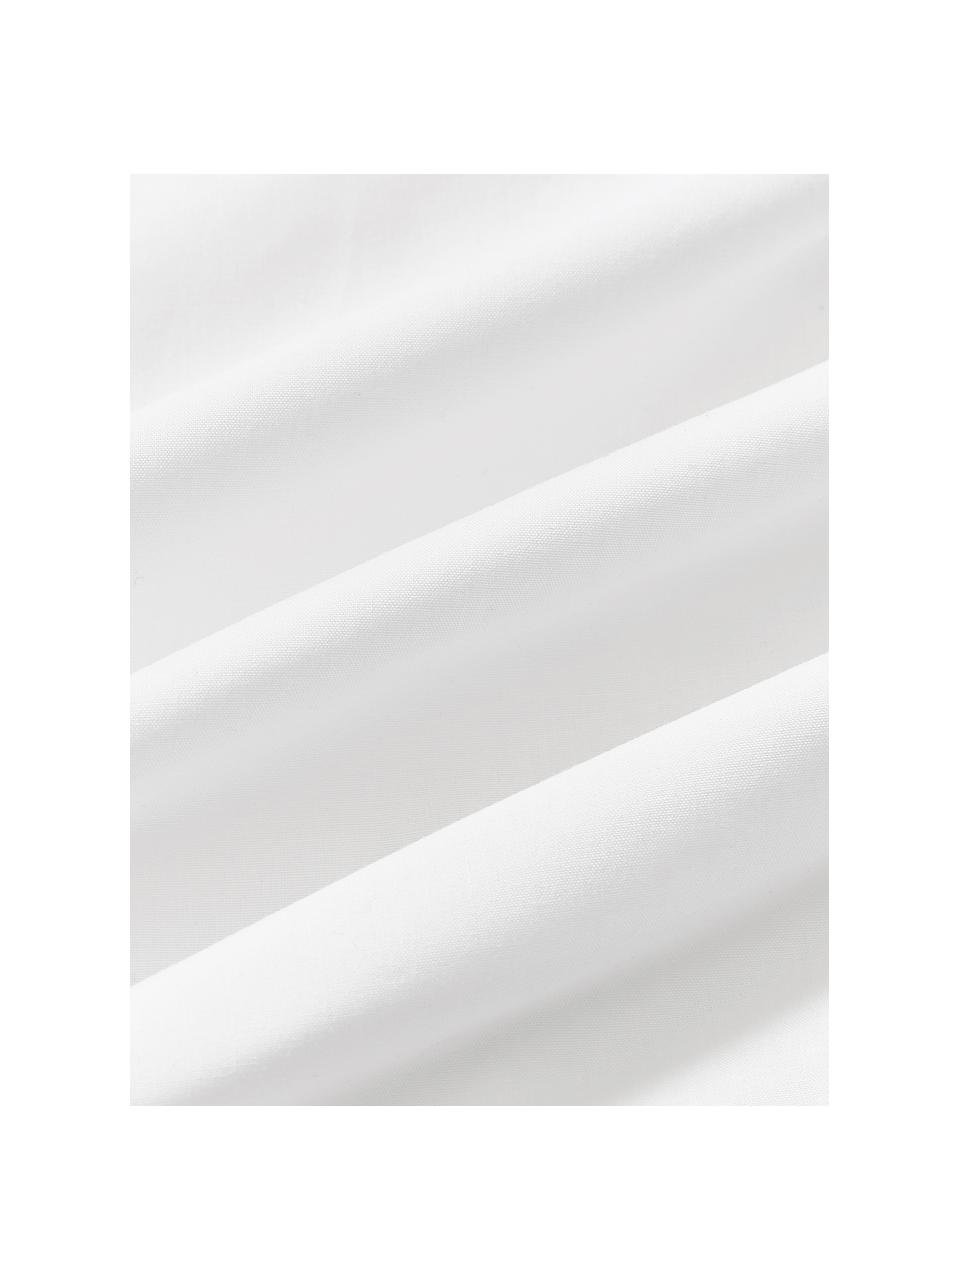 Copripiumino in cotone percalle con motivo trapuntato effetto origami Brody, Bianco, Larg. 200 x Lung. 200 cm